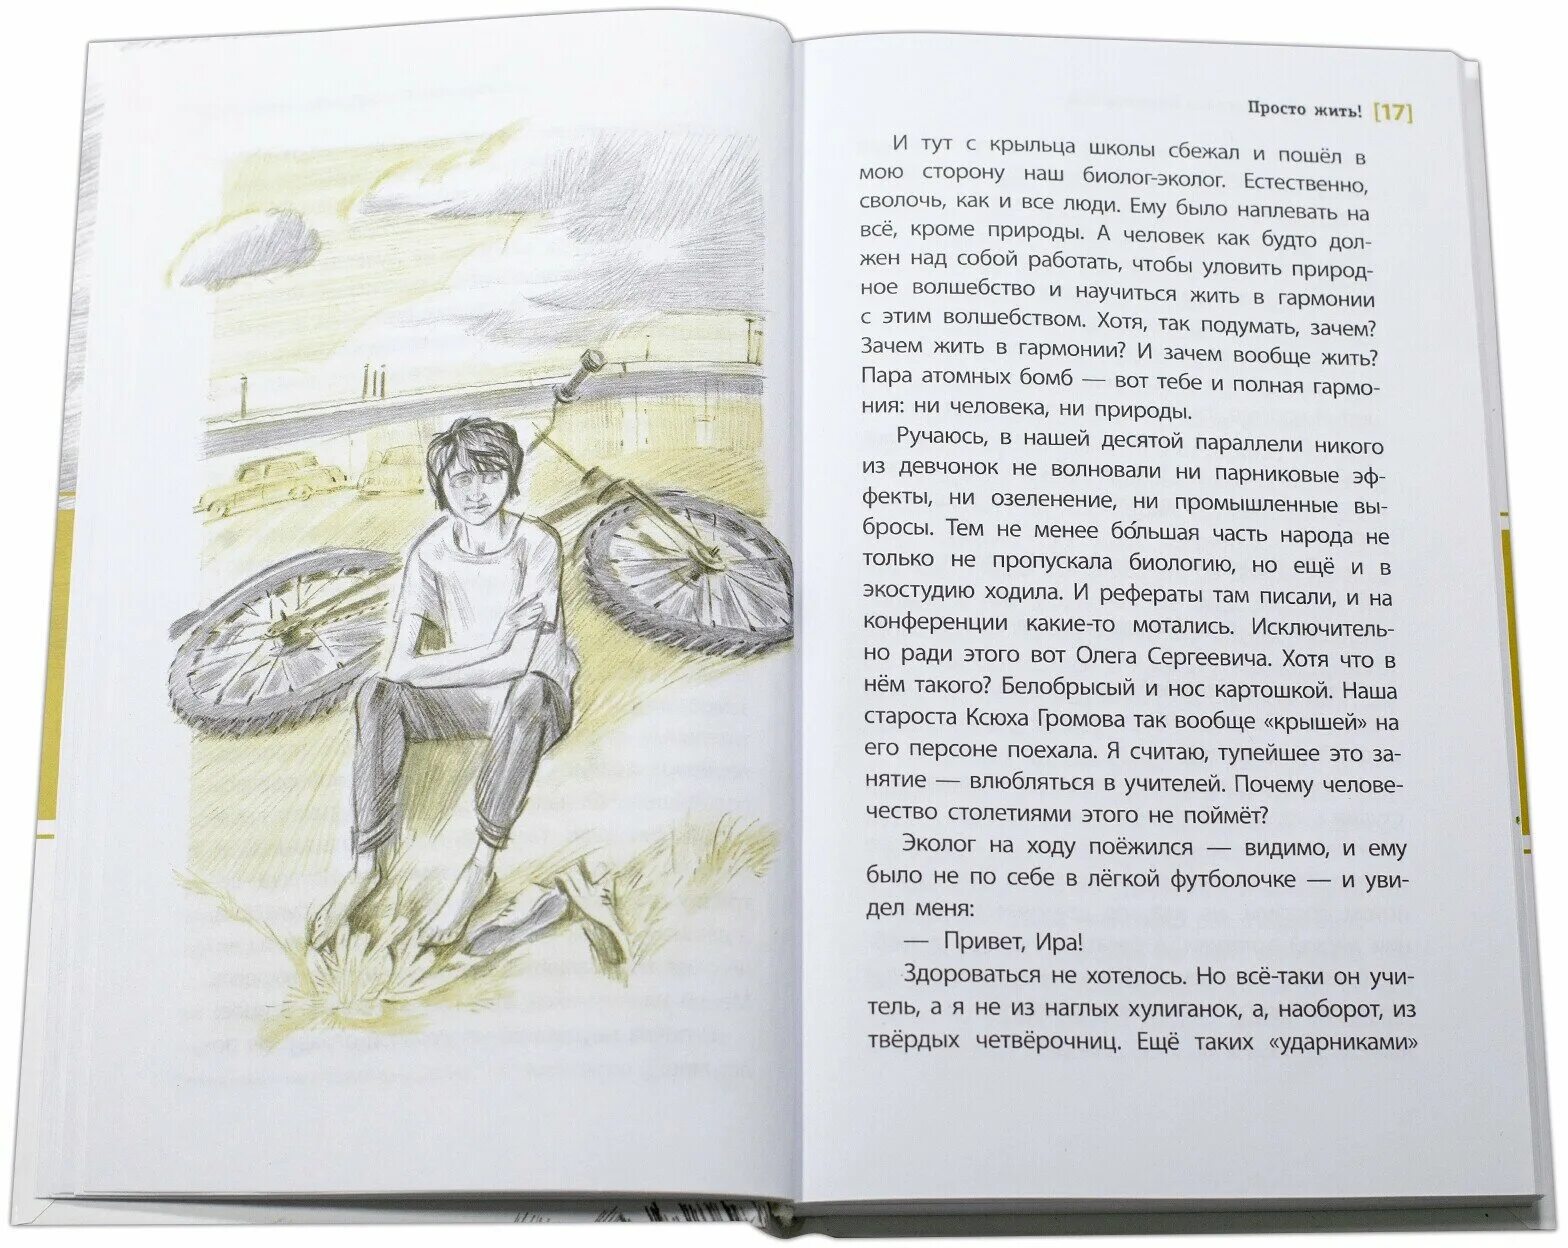 Просто жить книга. Просто жить книга Пономарева. Иллюстрации к книге Пономаревых просто жить.